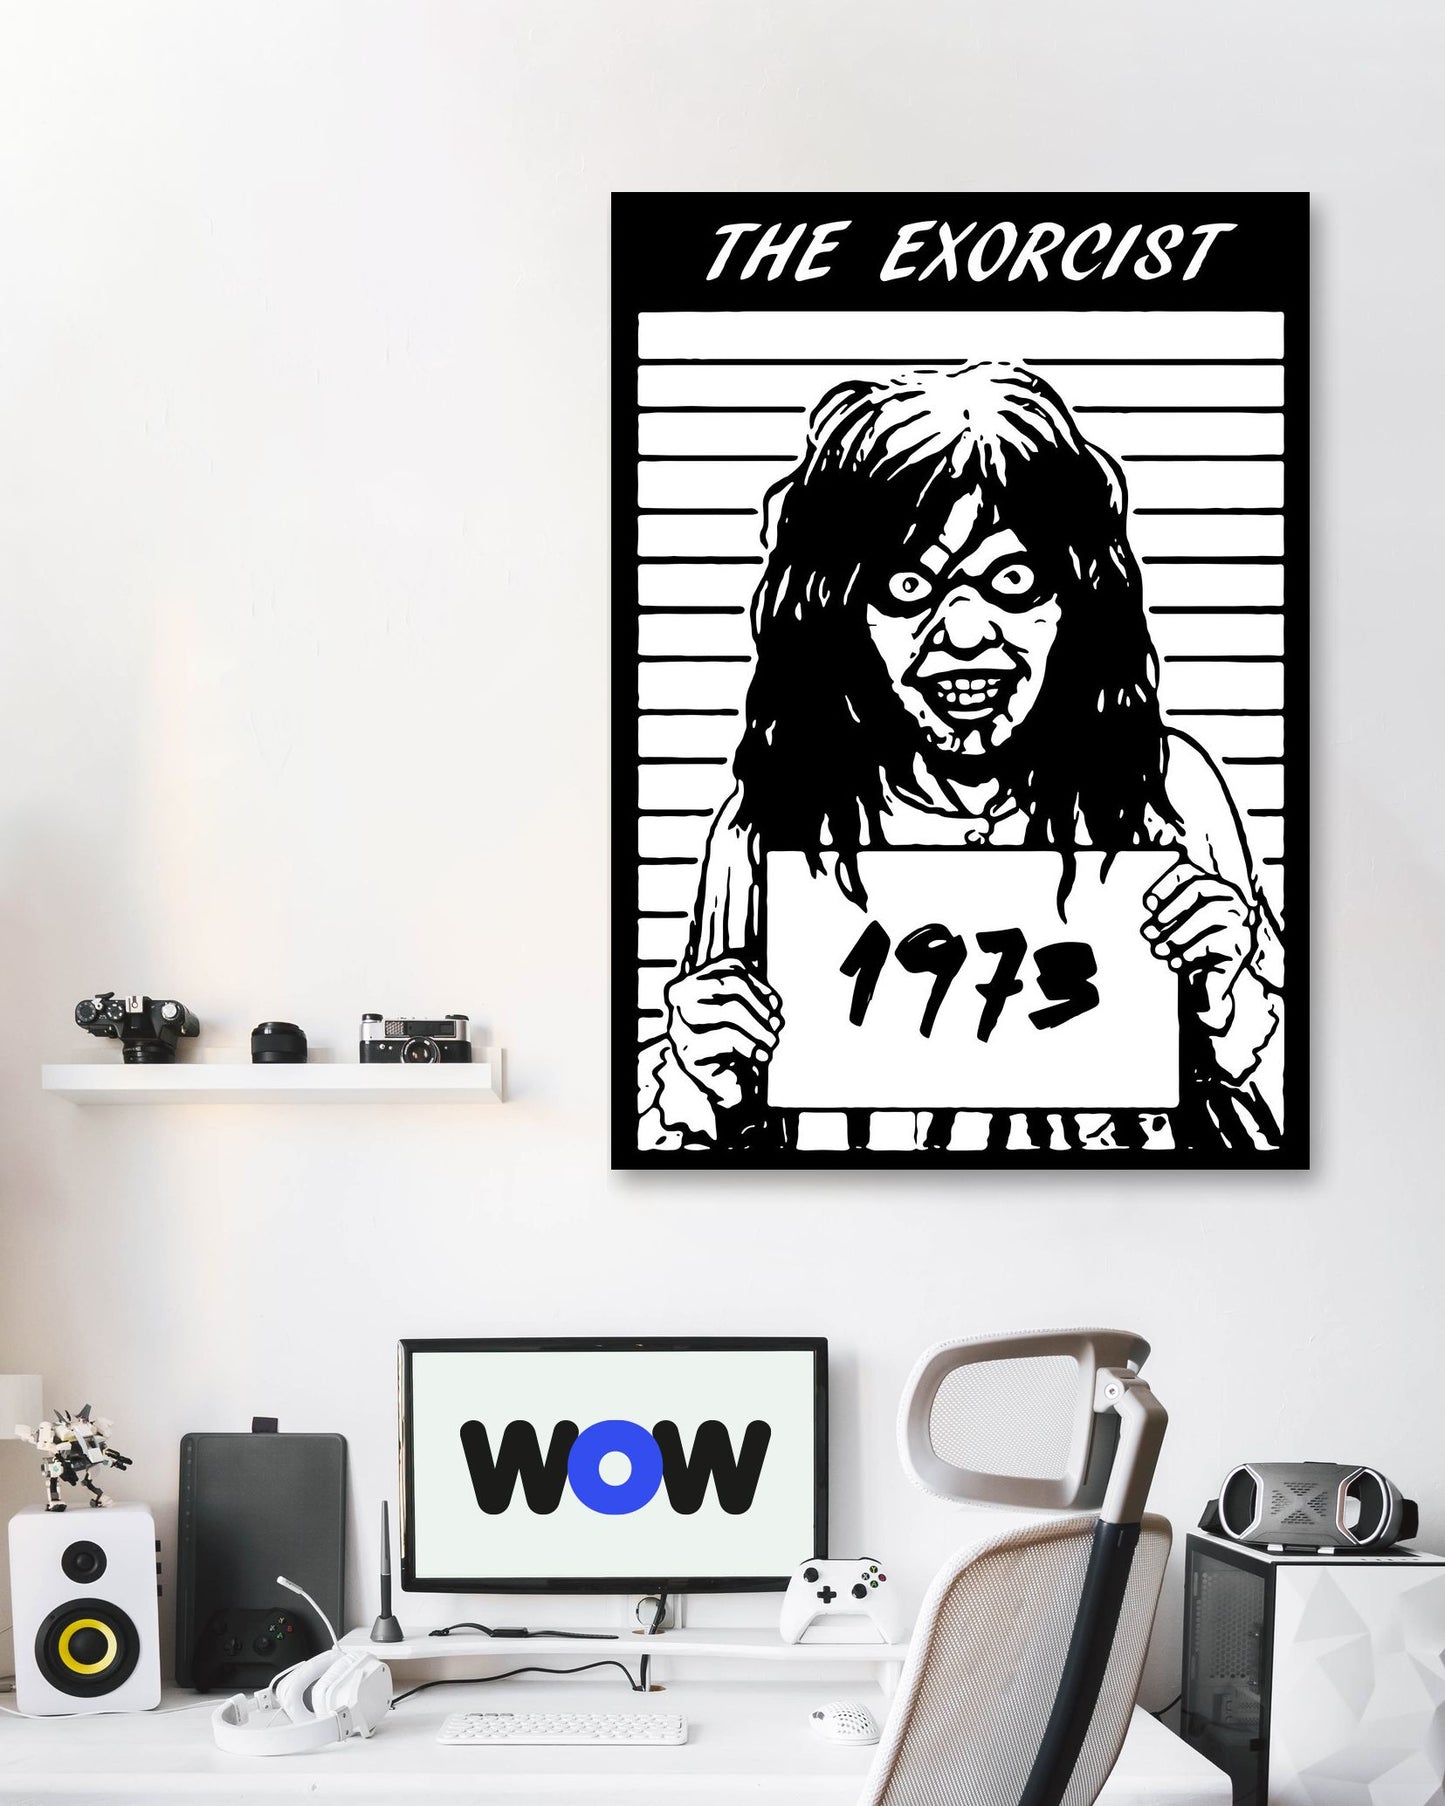 Slashers Horror Movies the Exorcist - @SyanArt